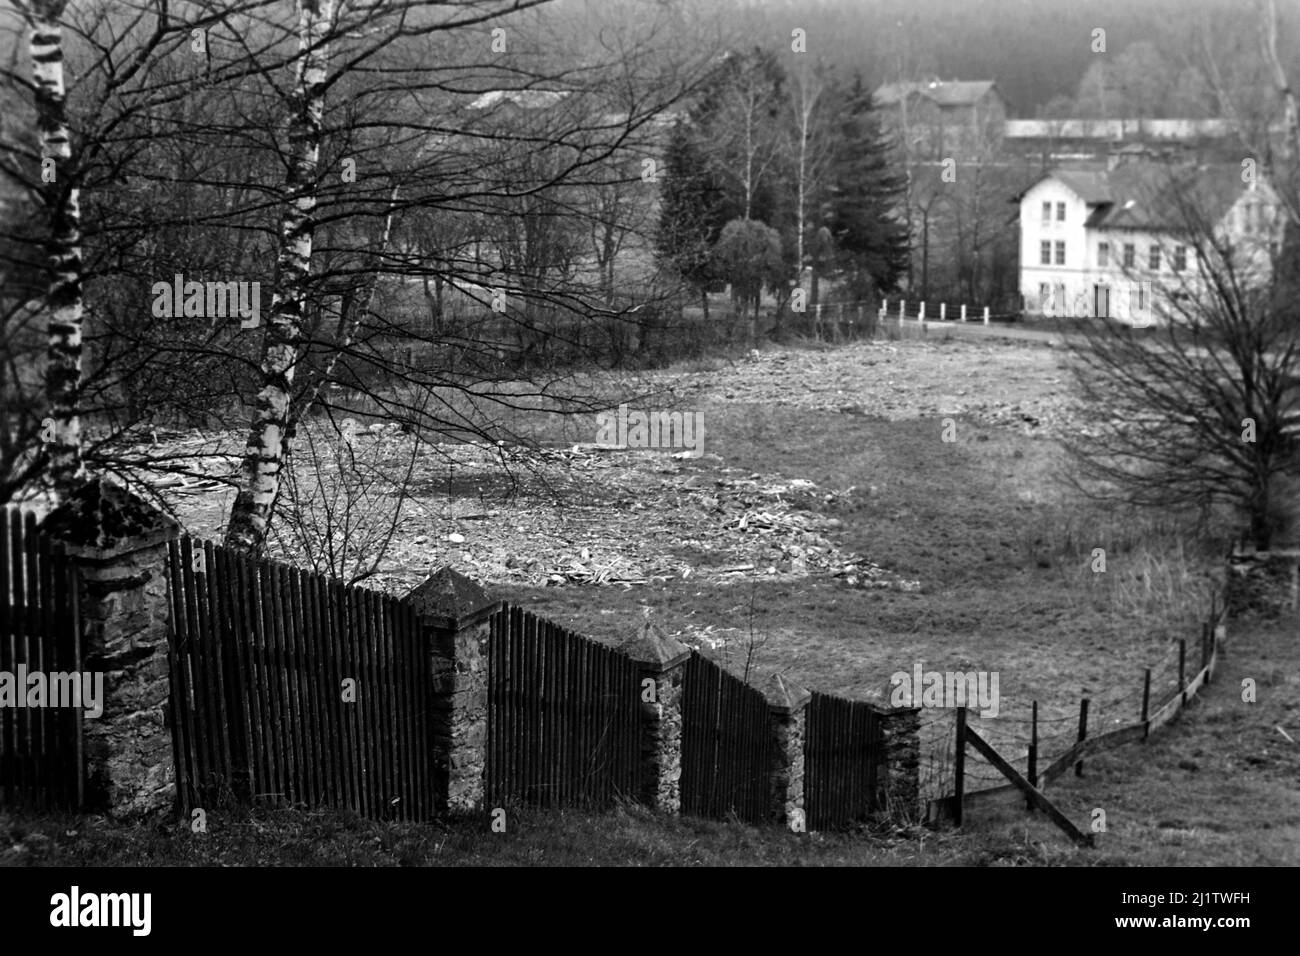 Blick auf den Bayerischen Wald im Zwieseler Umland, 1958. Blick auf den Bayerischen Wald am Stadtrand von Zwiesel, 1958. Stockfoto